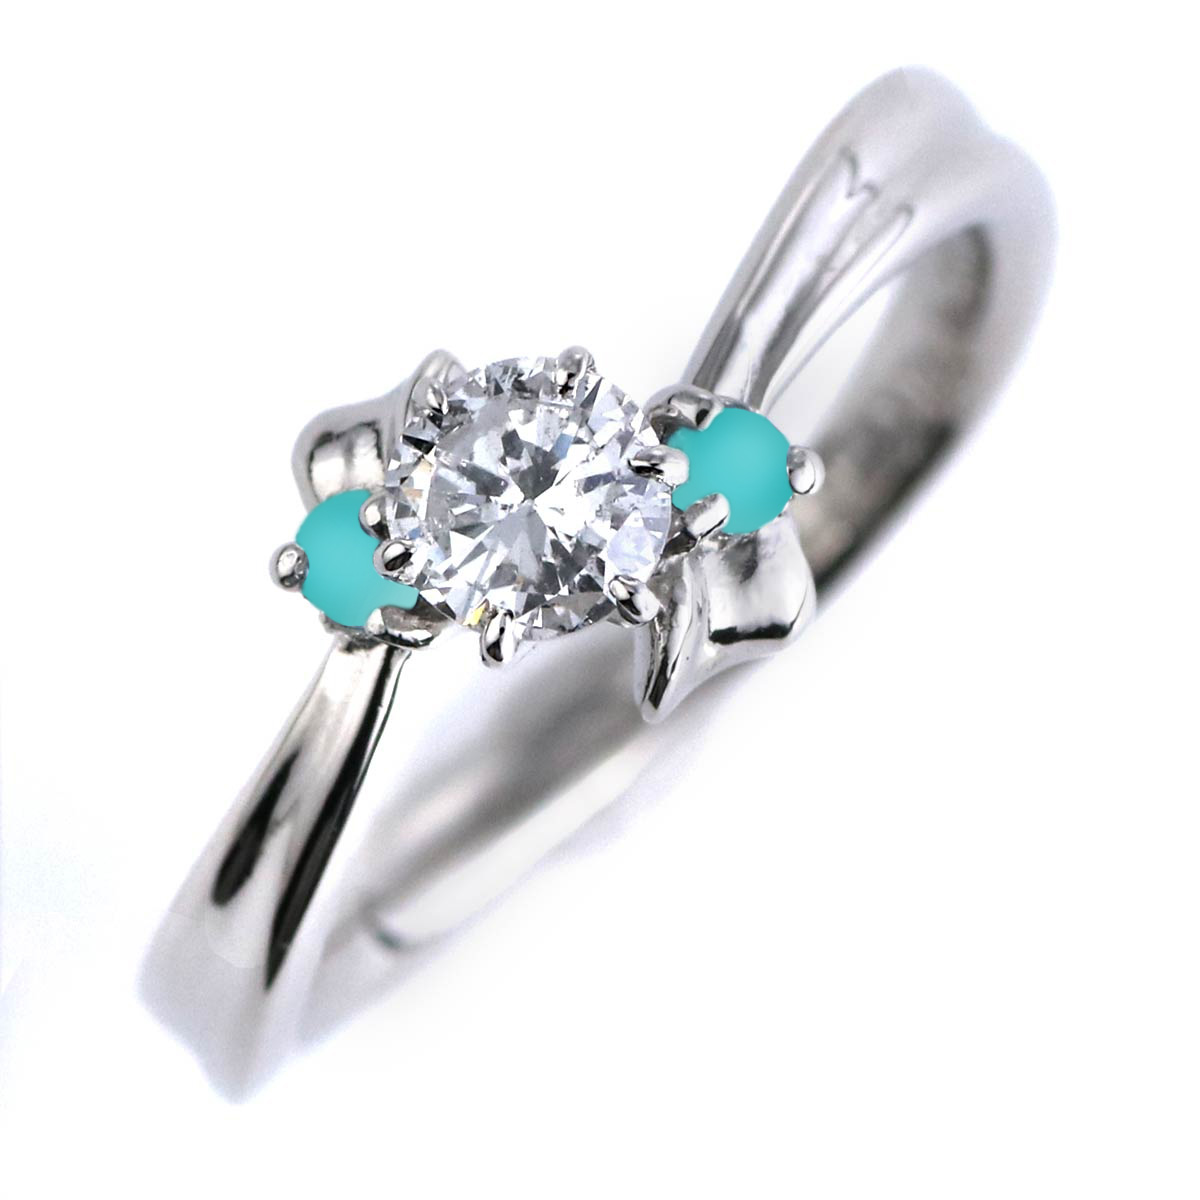 婚約指輪 ダイヤモンド プラチナリング 一粒 大粒 指輪 エンゲージリング 0.5ct プロポーズ用 レディース 人気 ダイヤ 刻印無料 12月 誕生石 ターコイズ